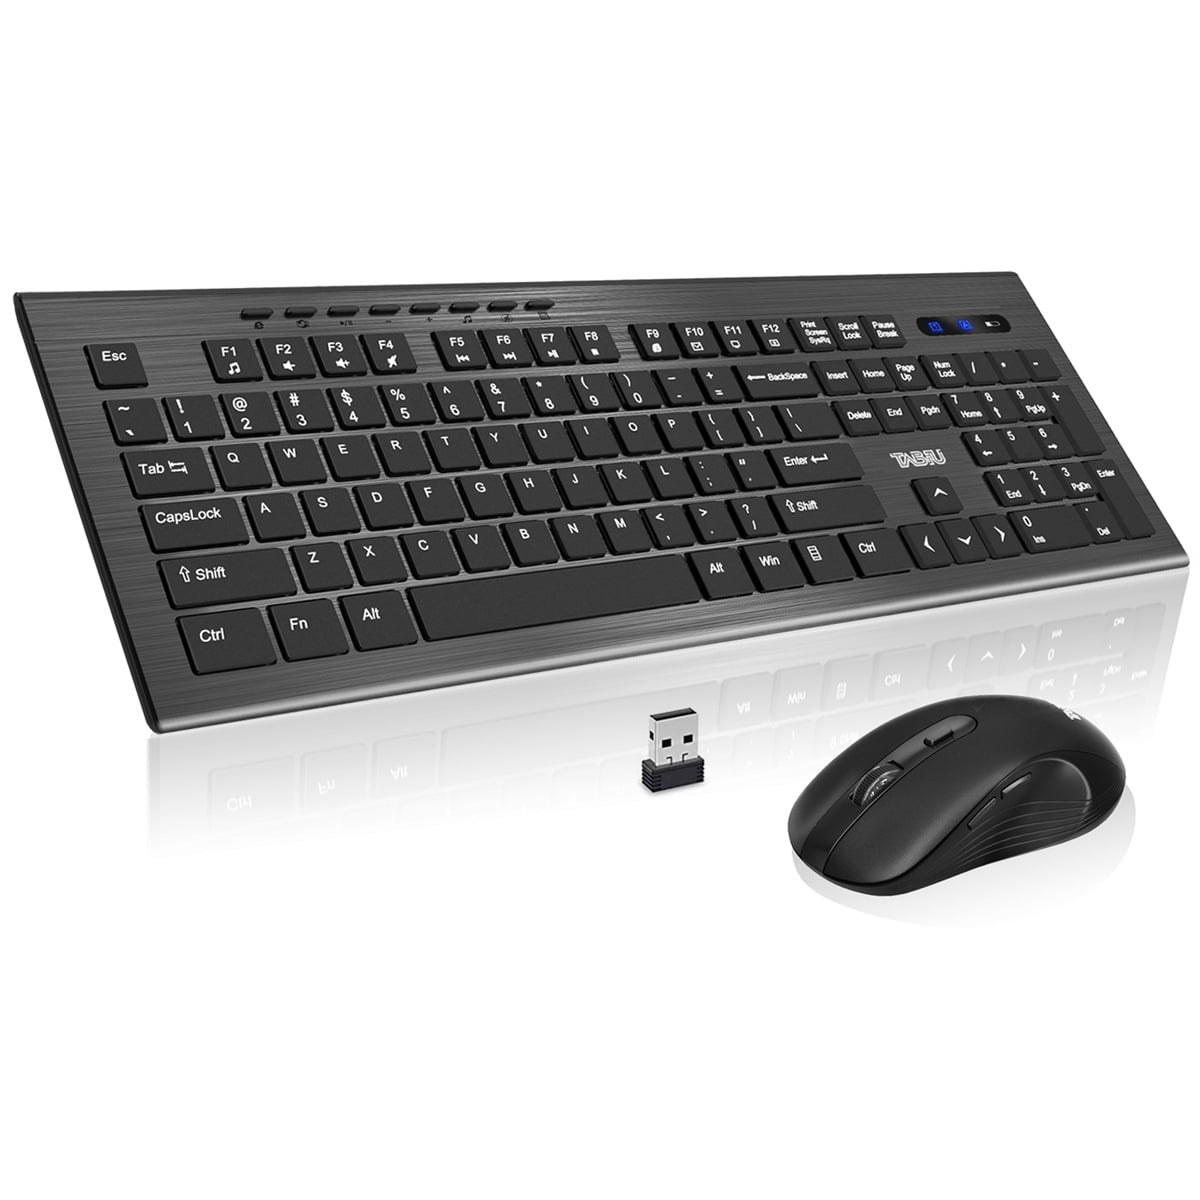 Prædiken tæerne genopretning VANELC Wireless Keyboard and Mouse Combo, 5 Level DPI Adjustable Wireless  Mouse and 2.4GHz Computer Keyboard, 112 Keys / Silent Keyboard, Independent  on/off Switch, Num/Caps/Power Indicator, Black - Walmart.com